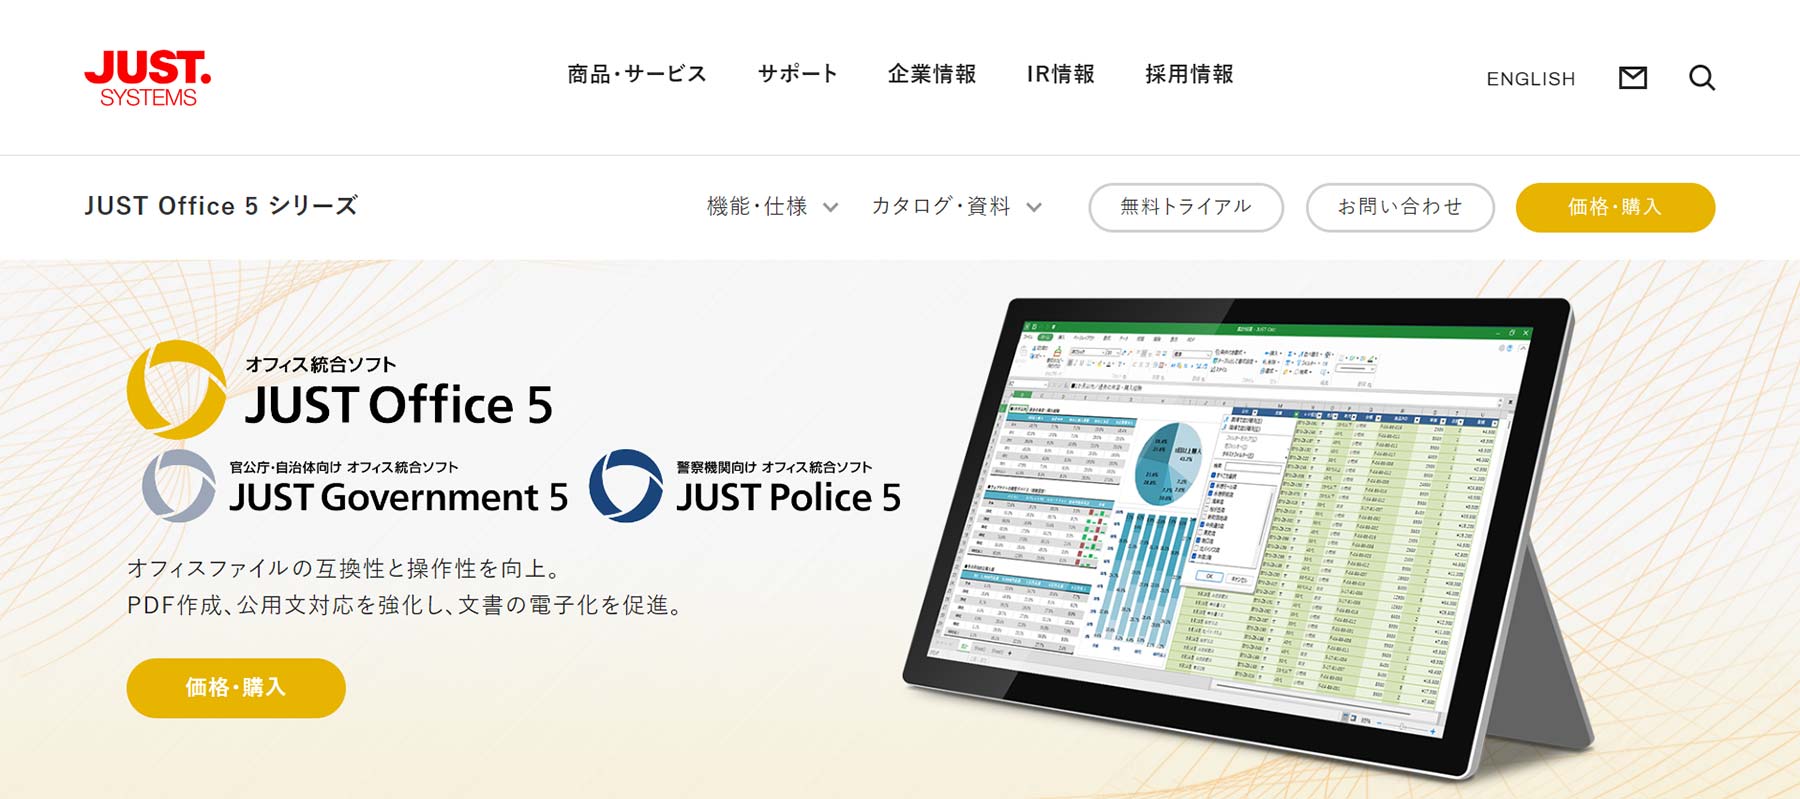 JUST Office 5シリーズ公式Webサイト